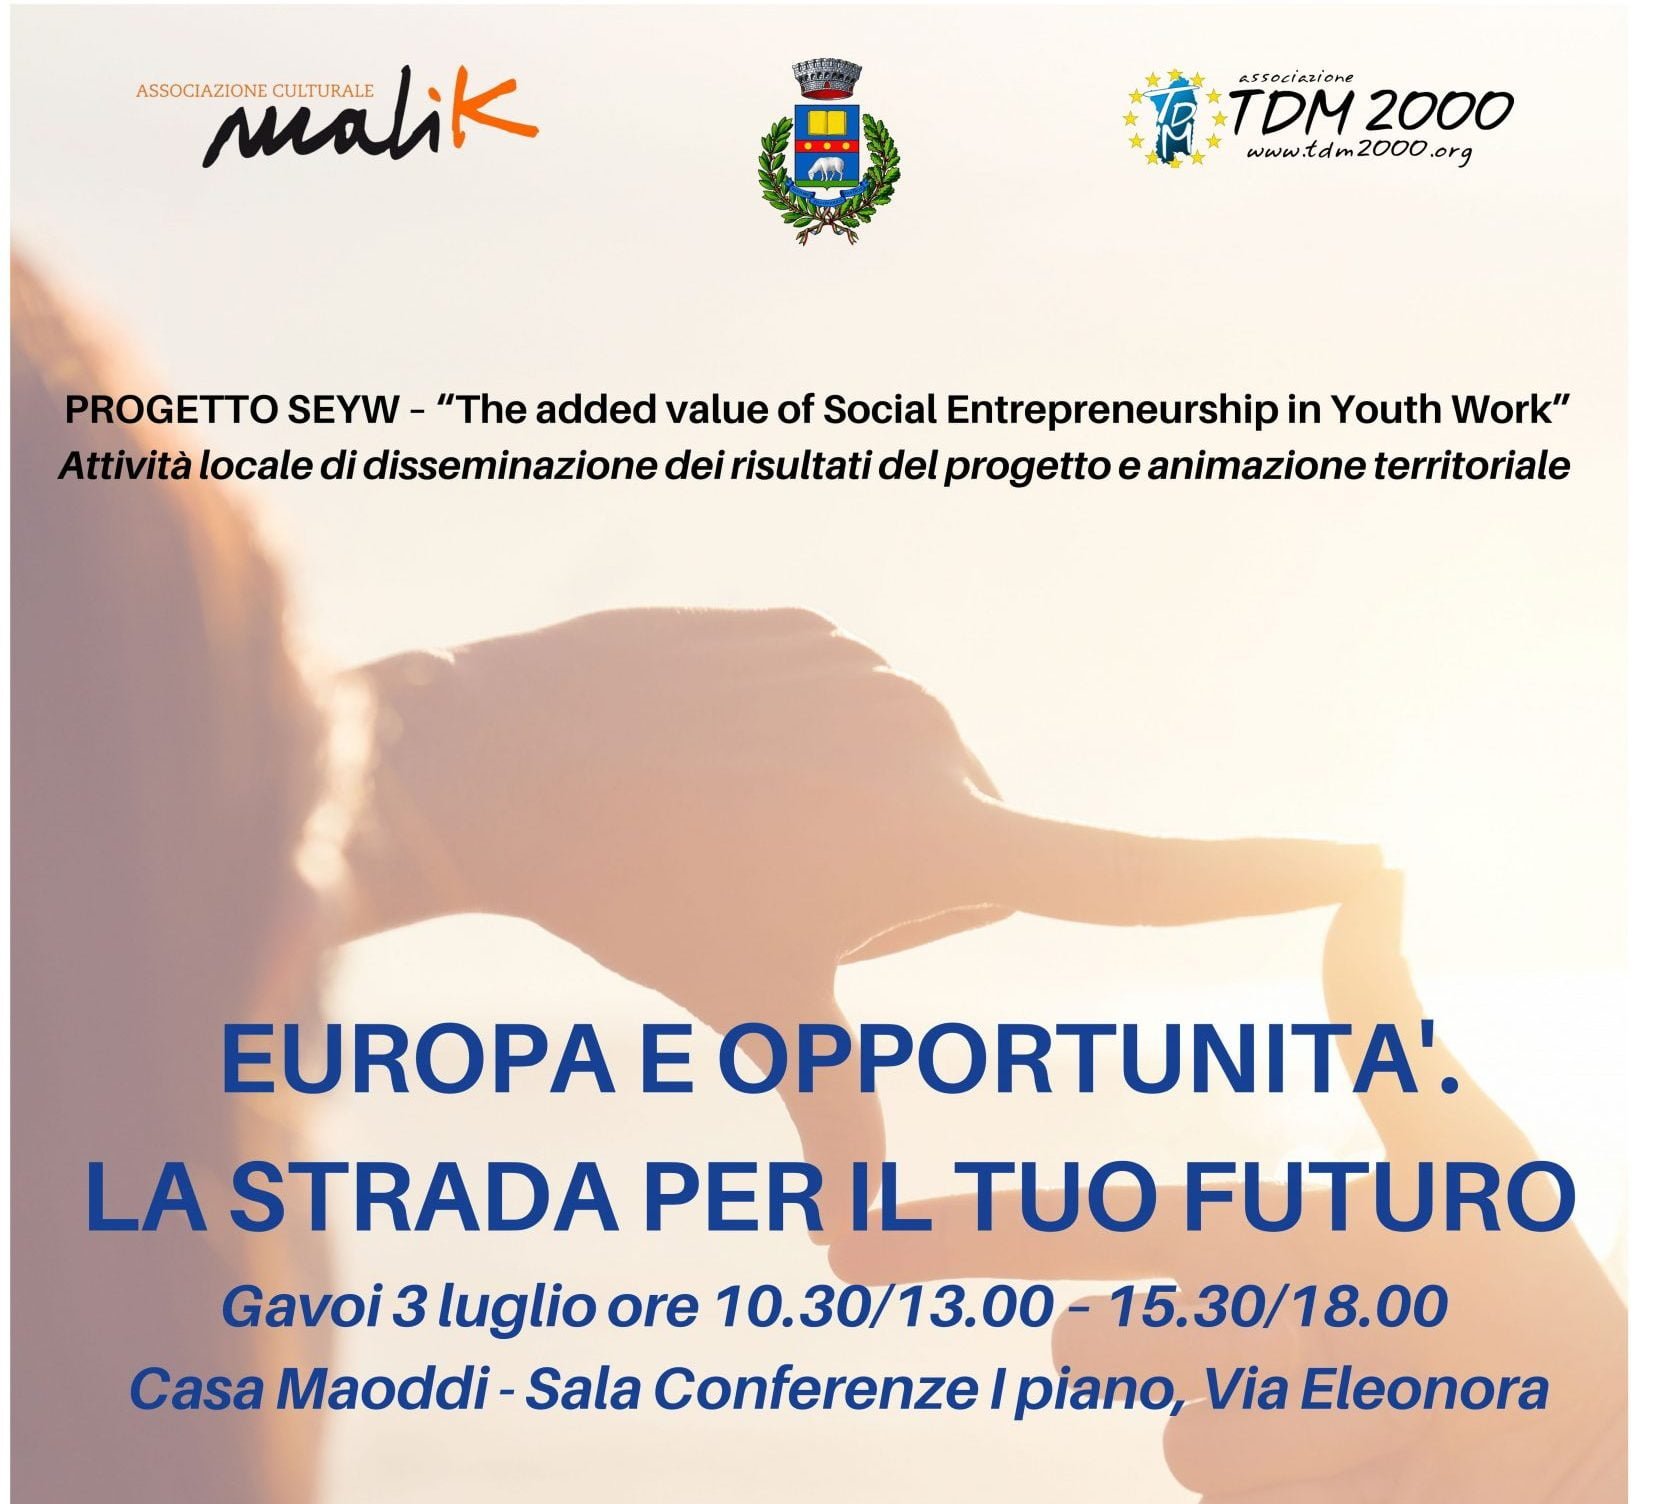 europa e opportunità la strada per il tuo futuro- Gavoi-Casa Maoddi in via Eleonora